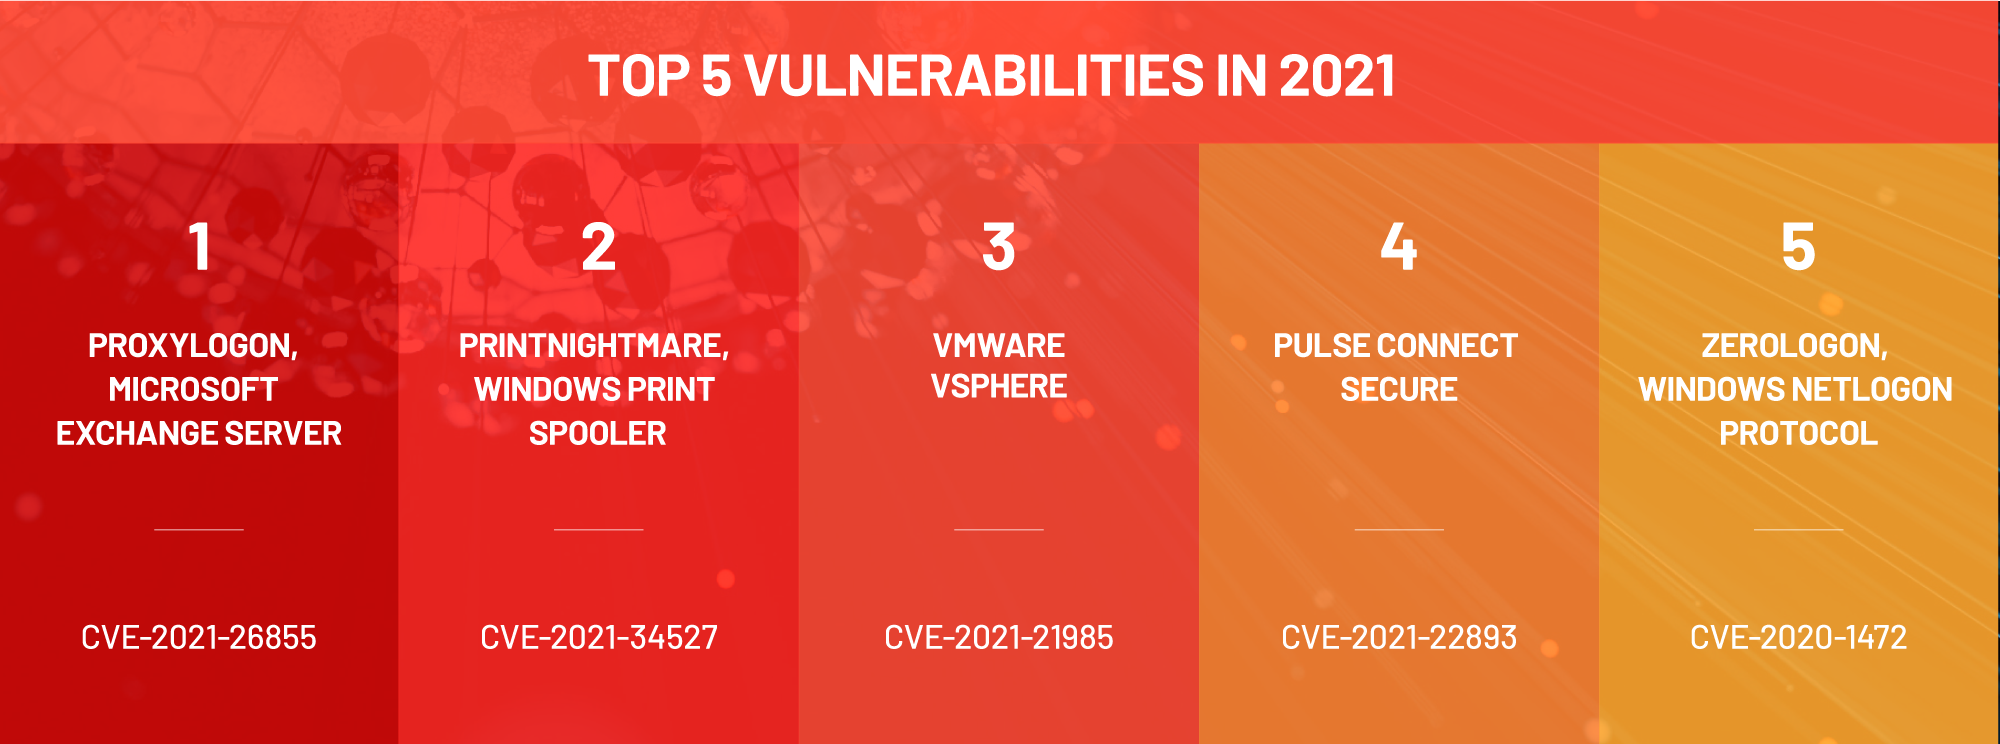 Top Five Vulnerabilities of 2021